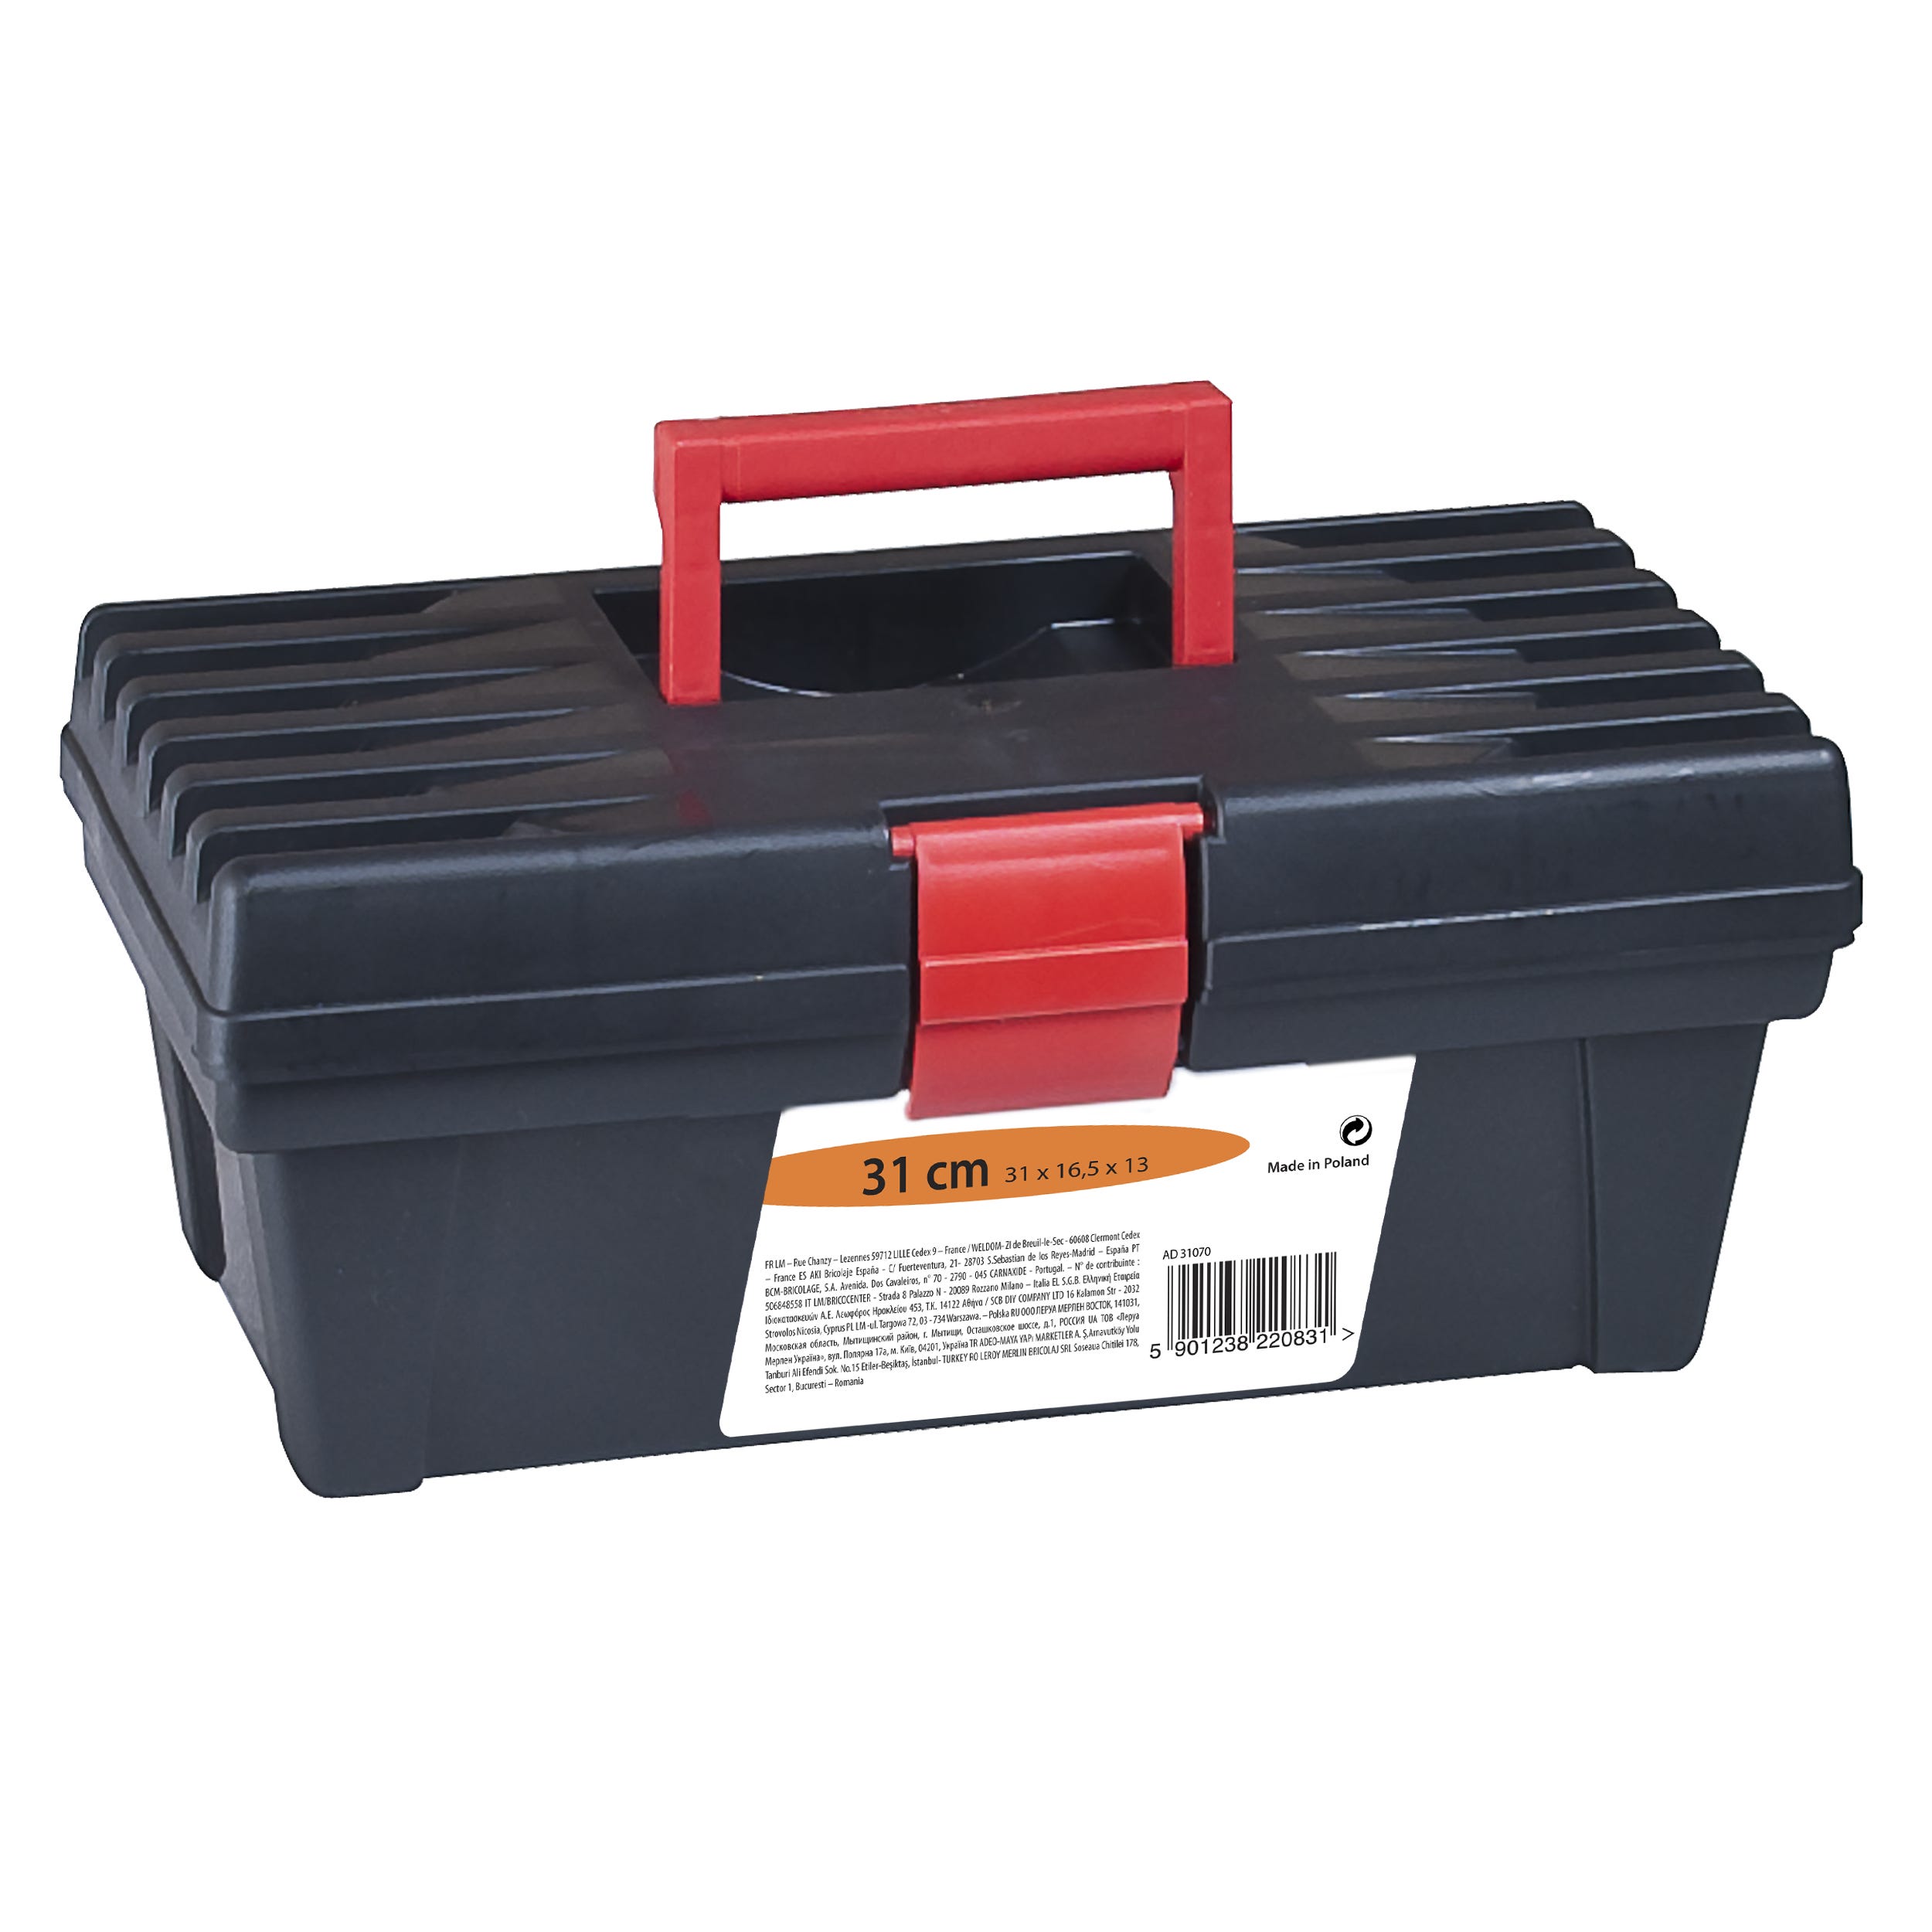 Caja de herramientas Basic 31 Cm con capacidad de 4.5 litros